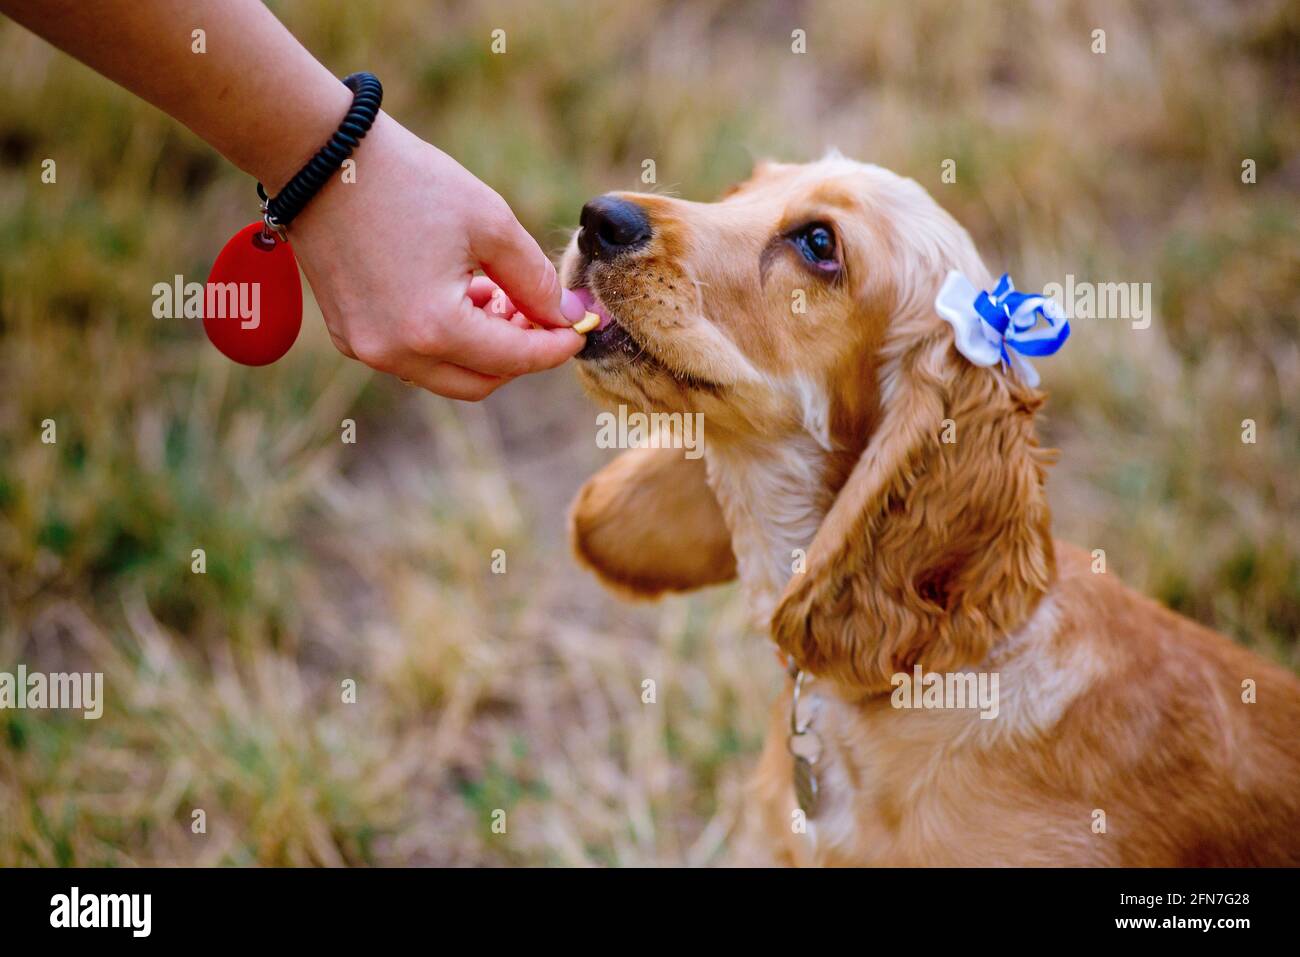 donna addestrando il suo piccolo cane, cocker spaniel razza cucciolo, all'aperto, in un parco. Foto Stock